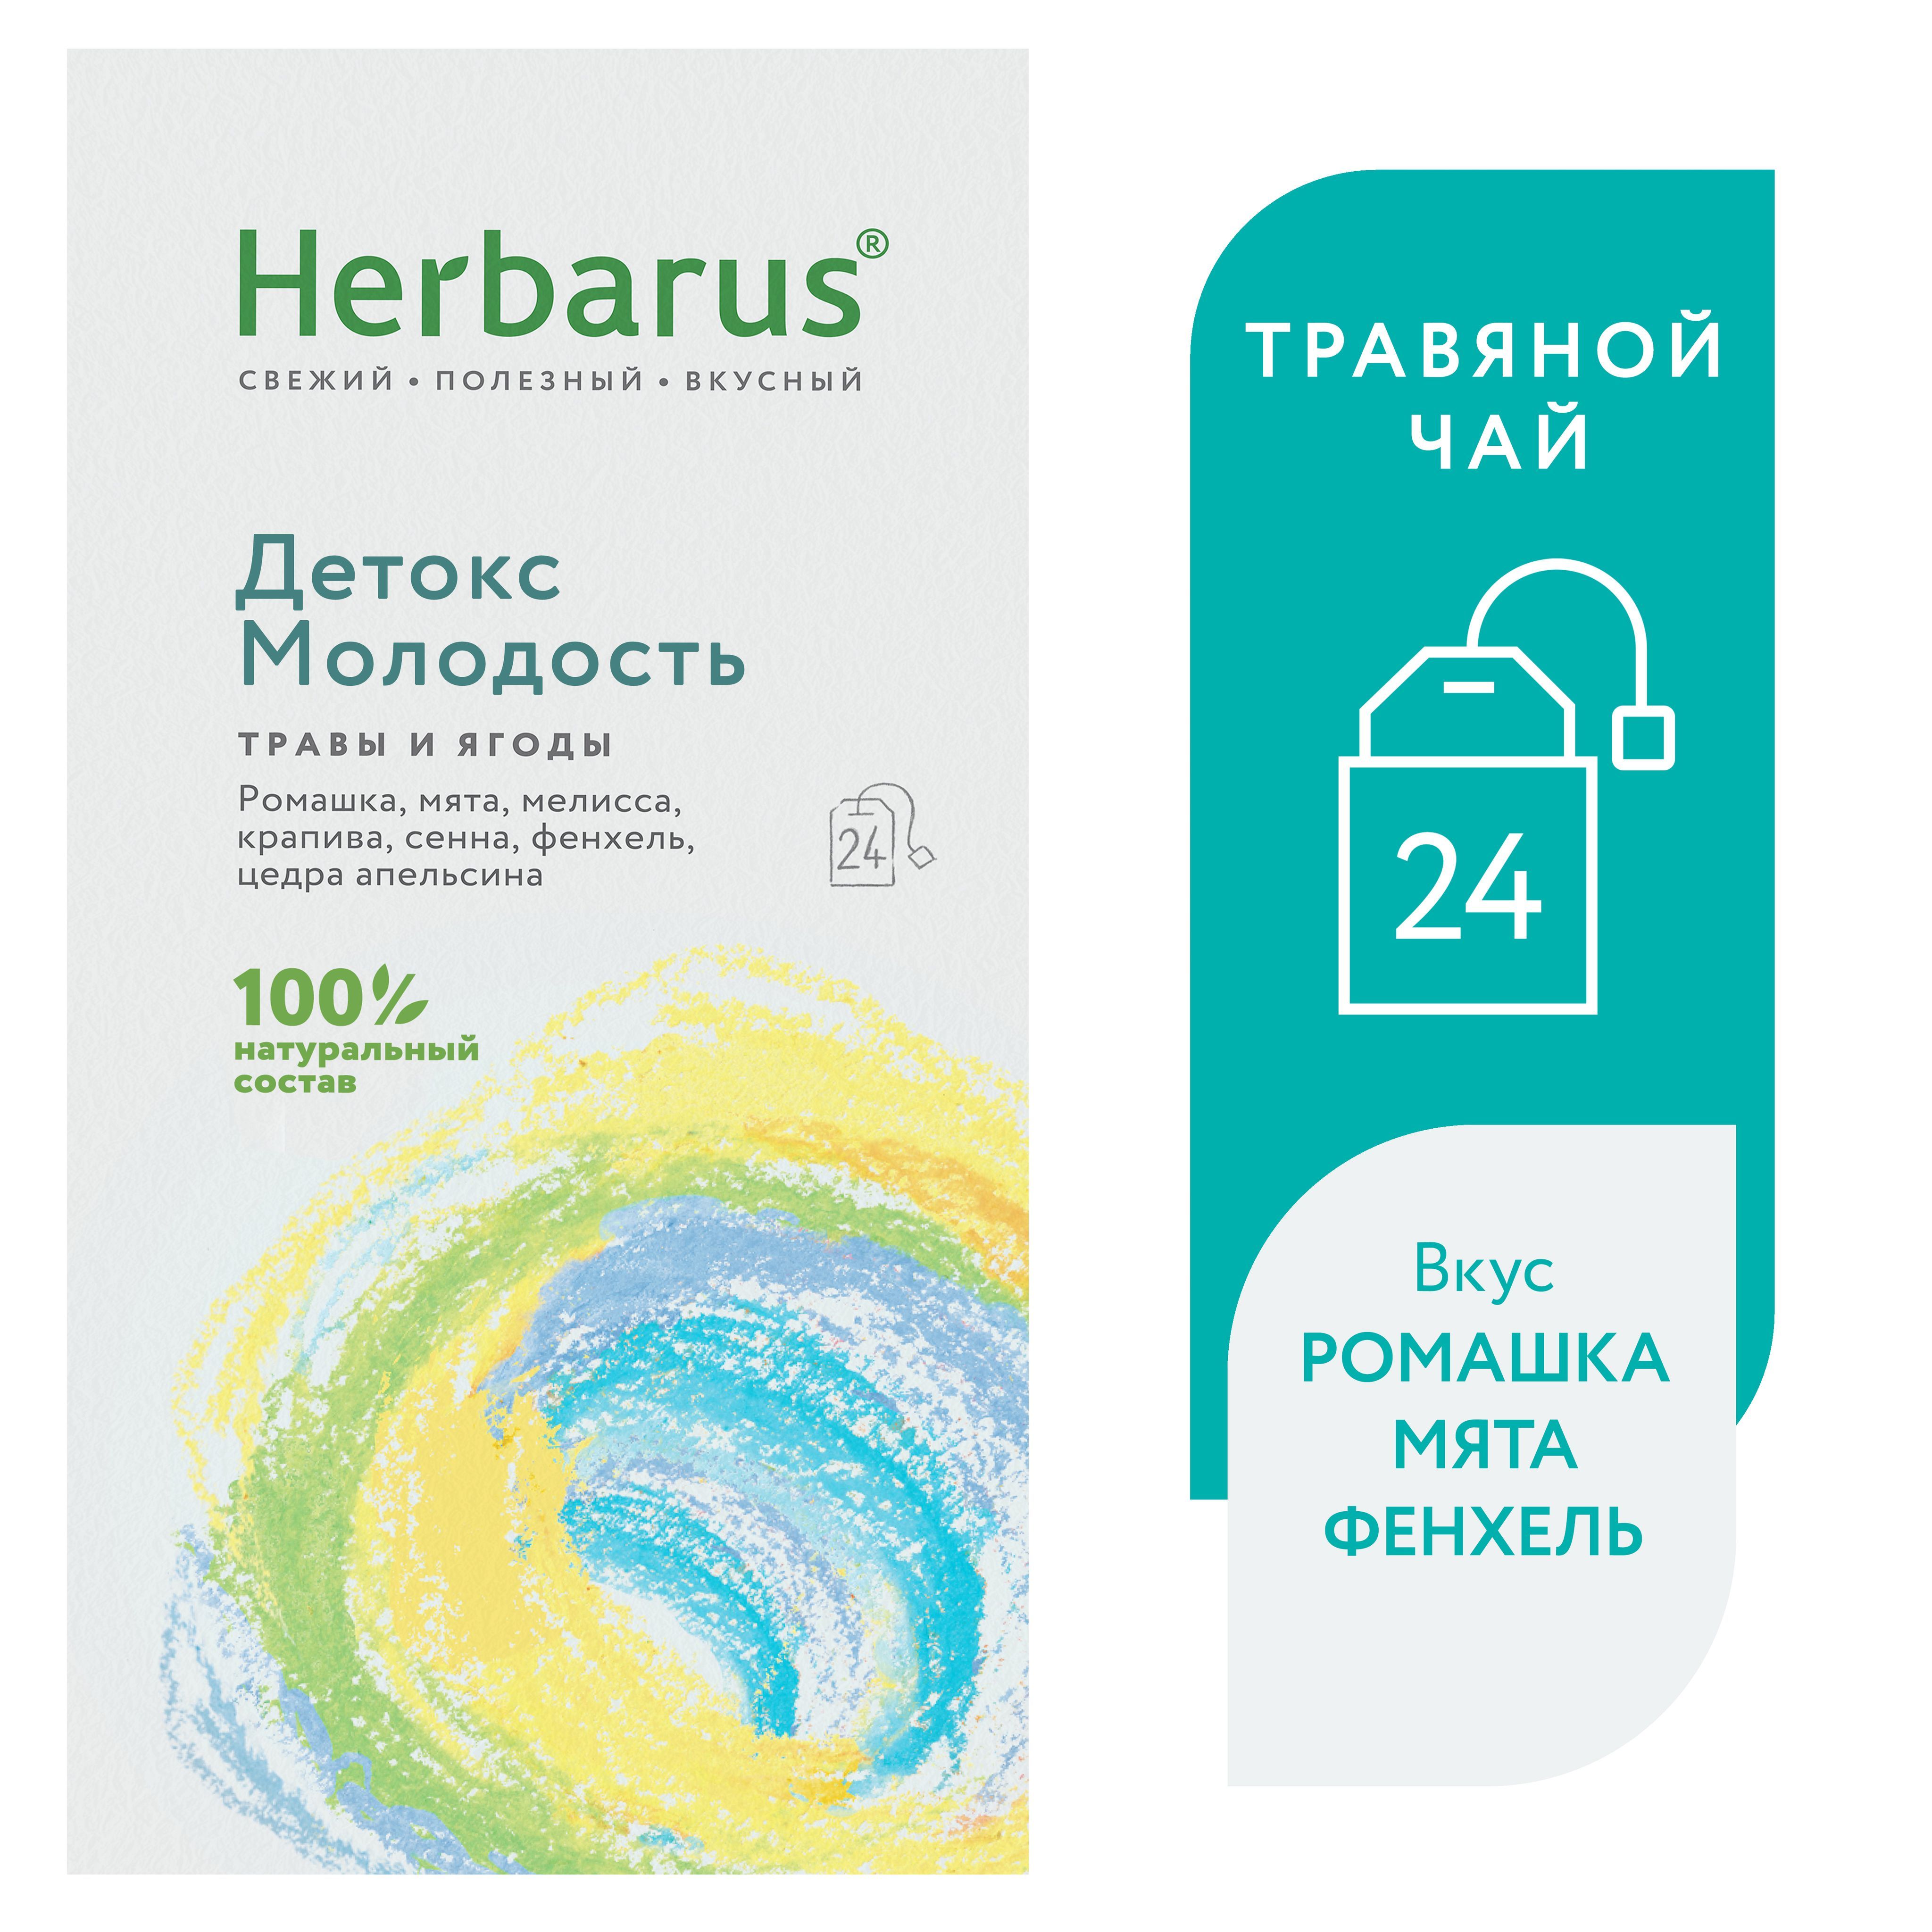 Чай Herbarus Купить В Москве